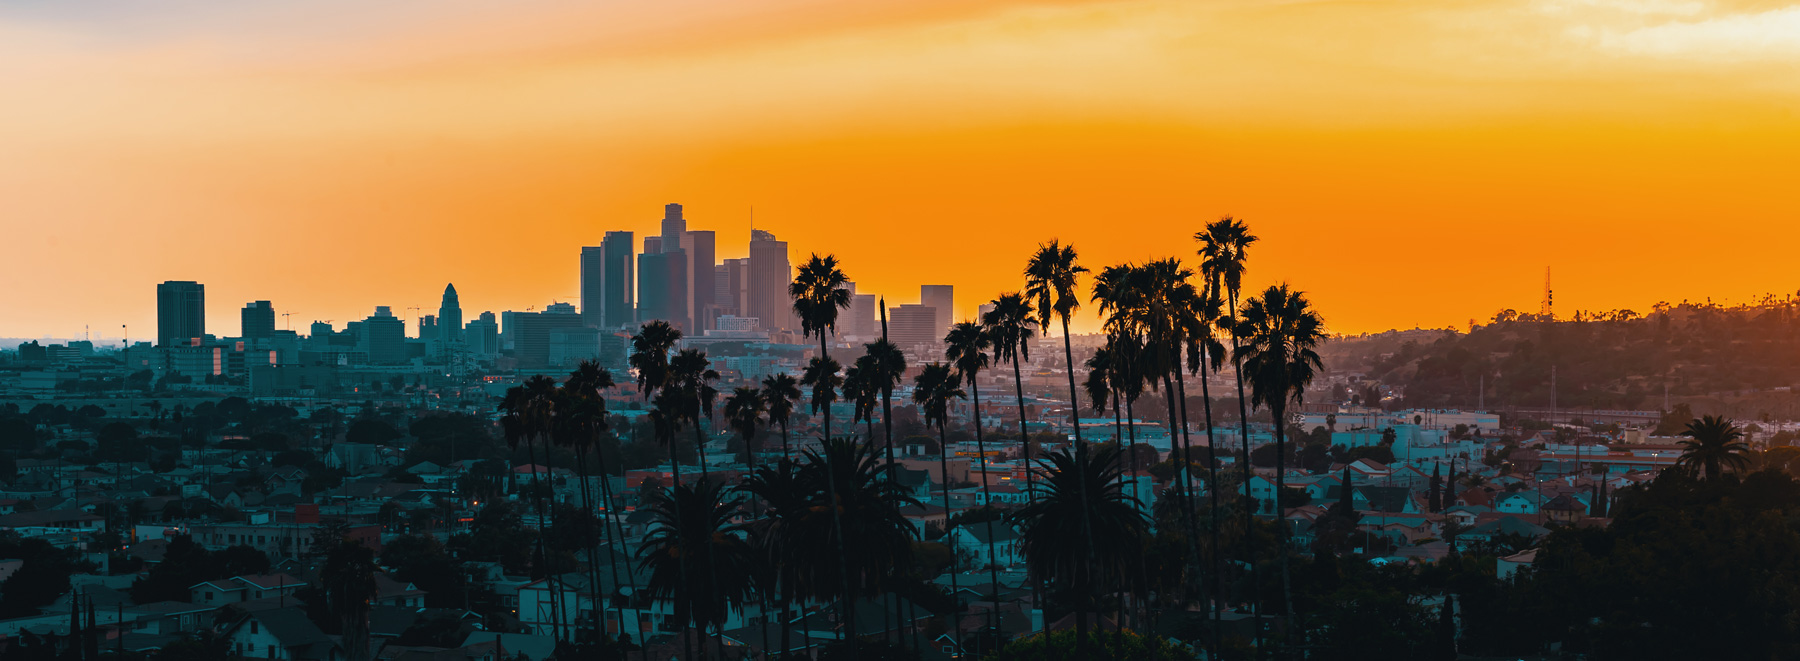 landscape of Los Angeles at dusk